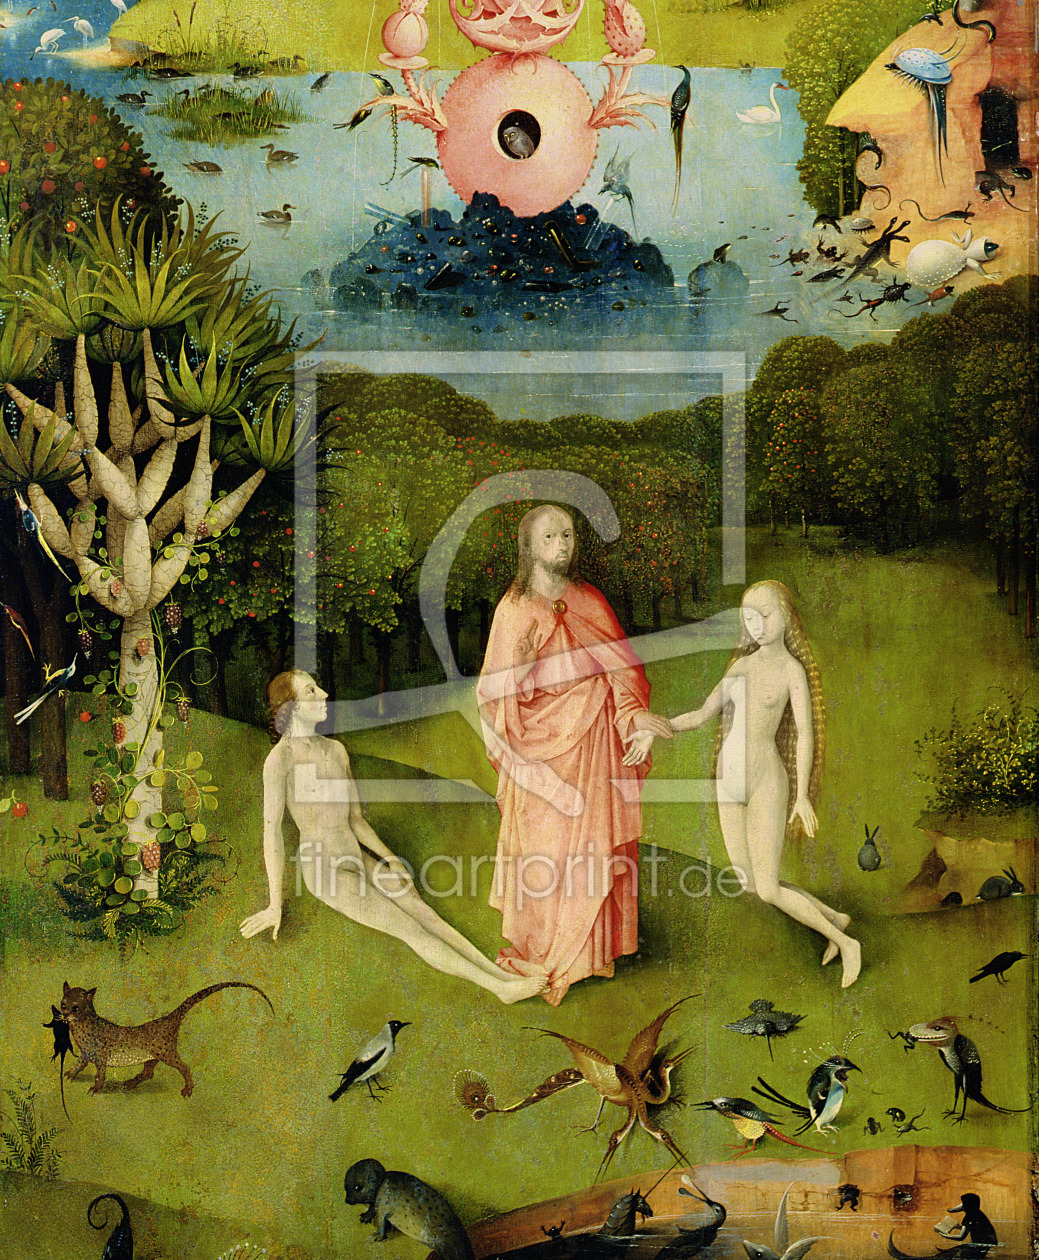 Bild-Nr.: 31000087 The Garden of Earthly Delights: The Garden of Eden, left wing of triptych, c.150 erstellt von Bosch, Hieronymus